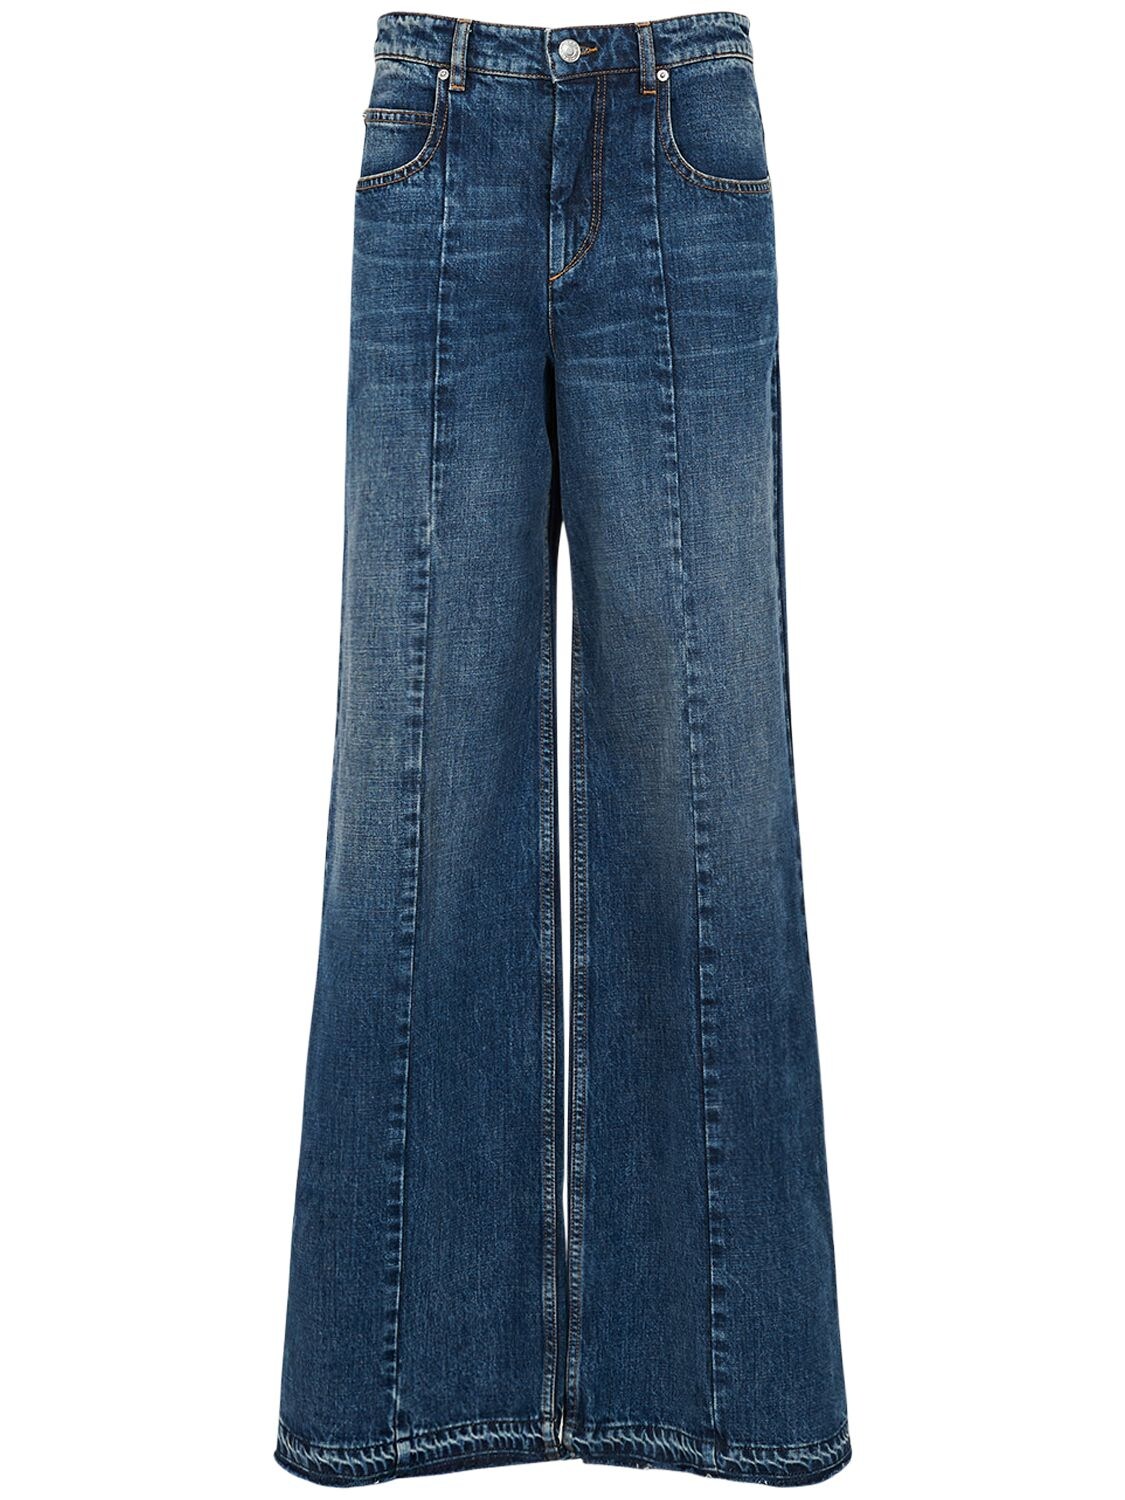 Noldy Cotton Denim Jeans – WOMEN > CLOTHING > JEANS